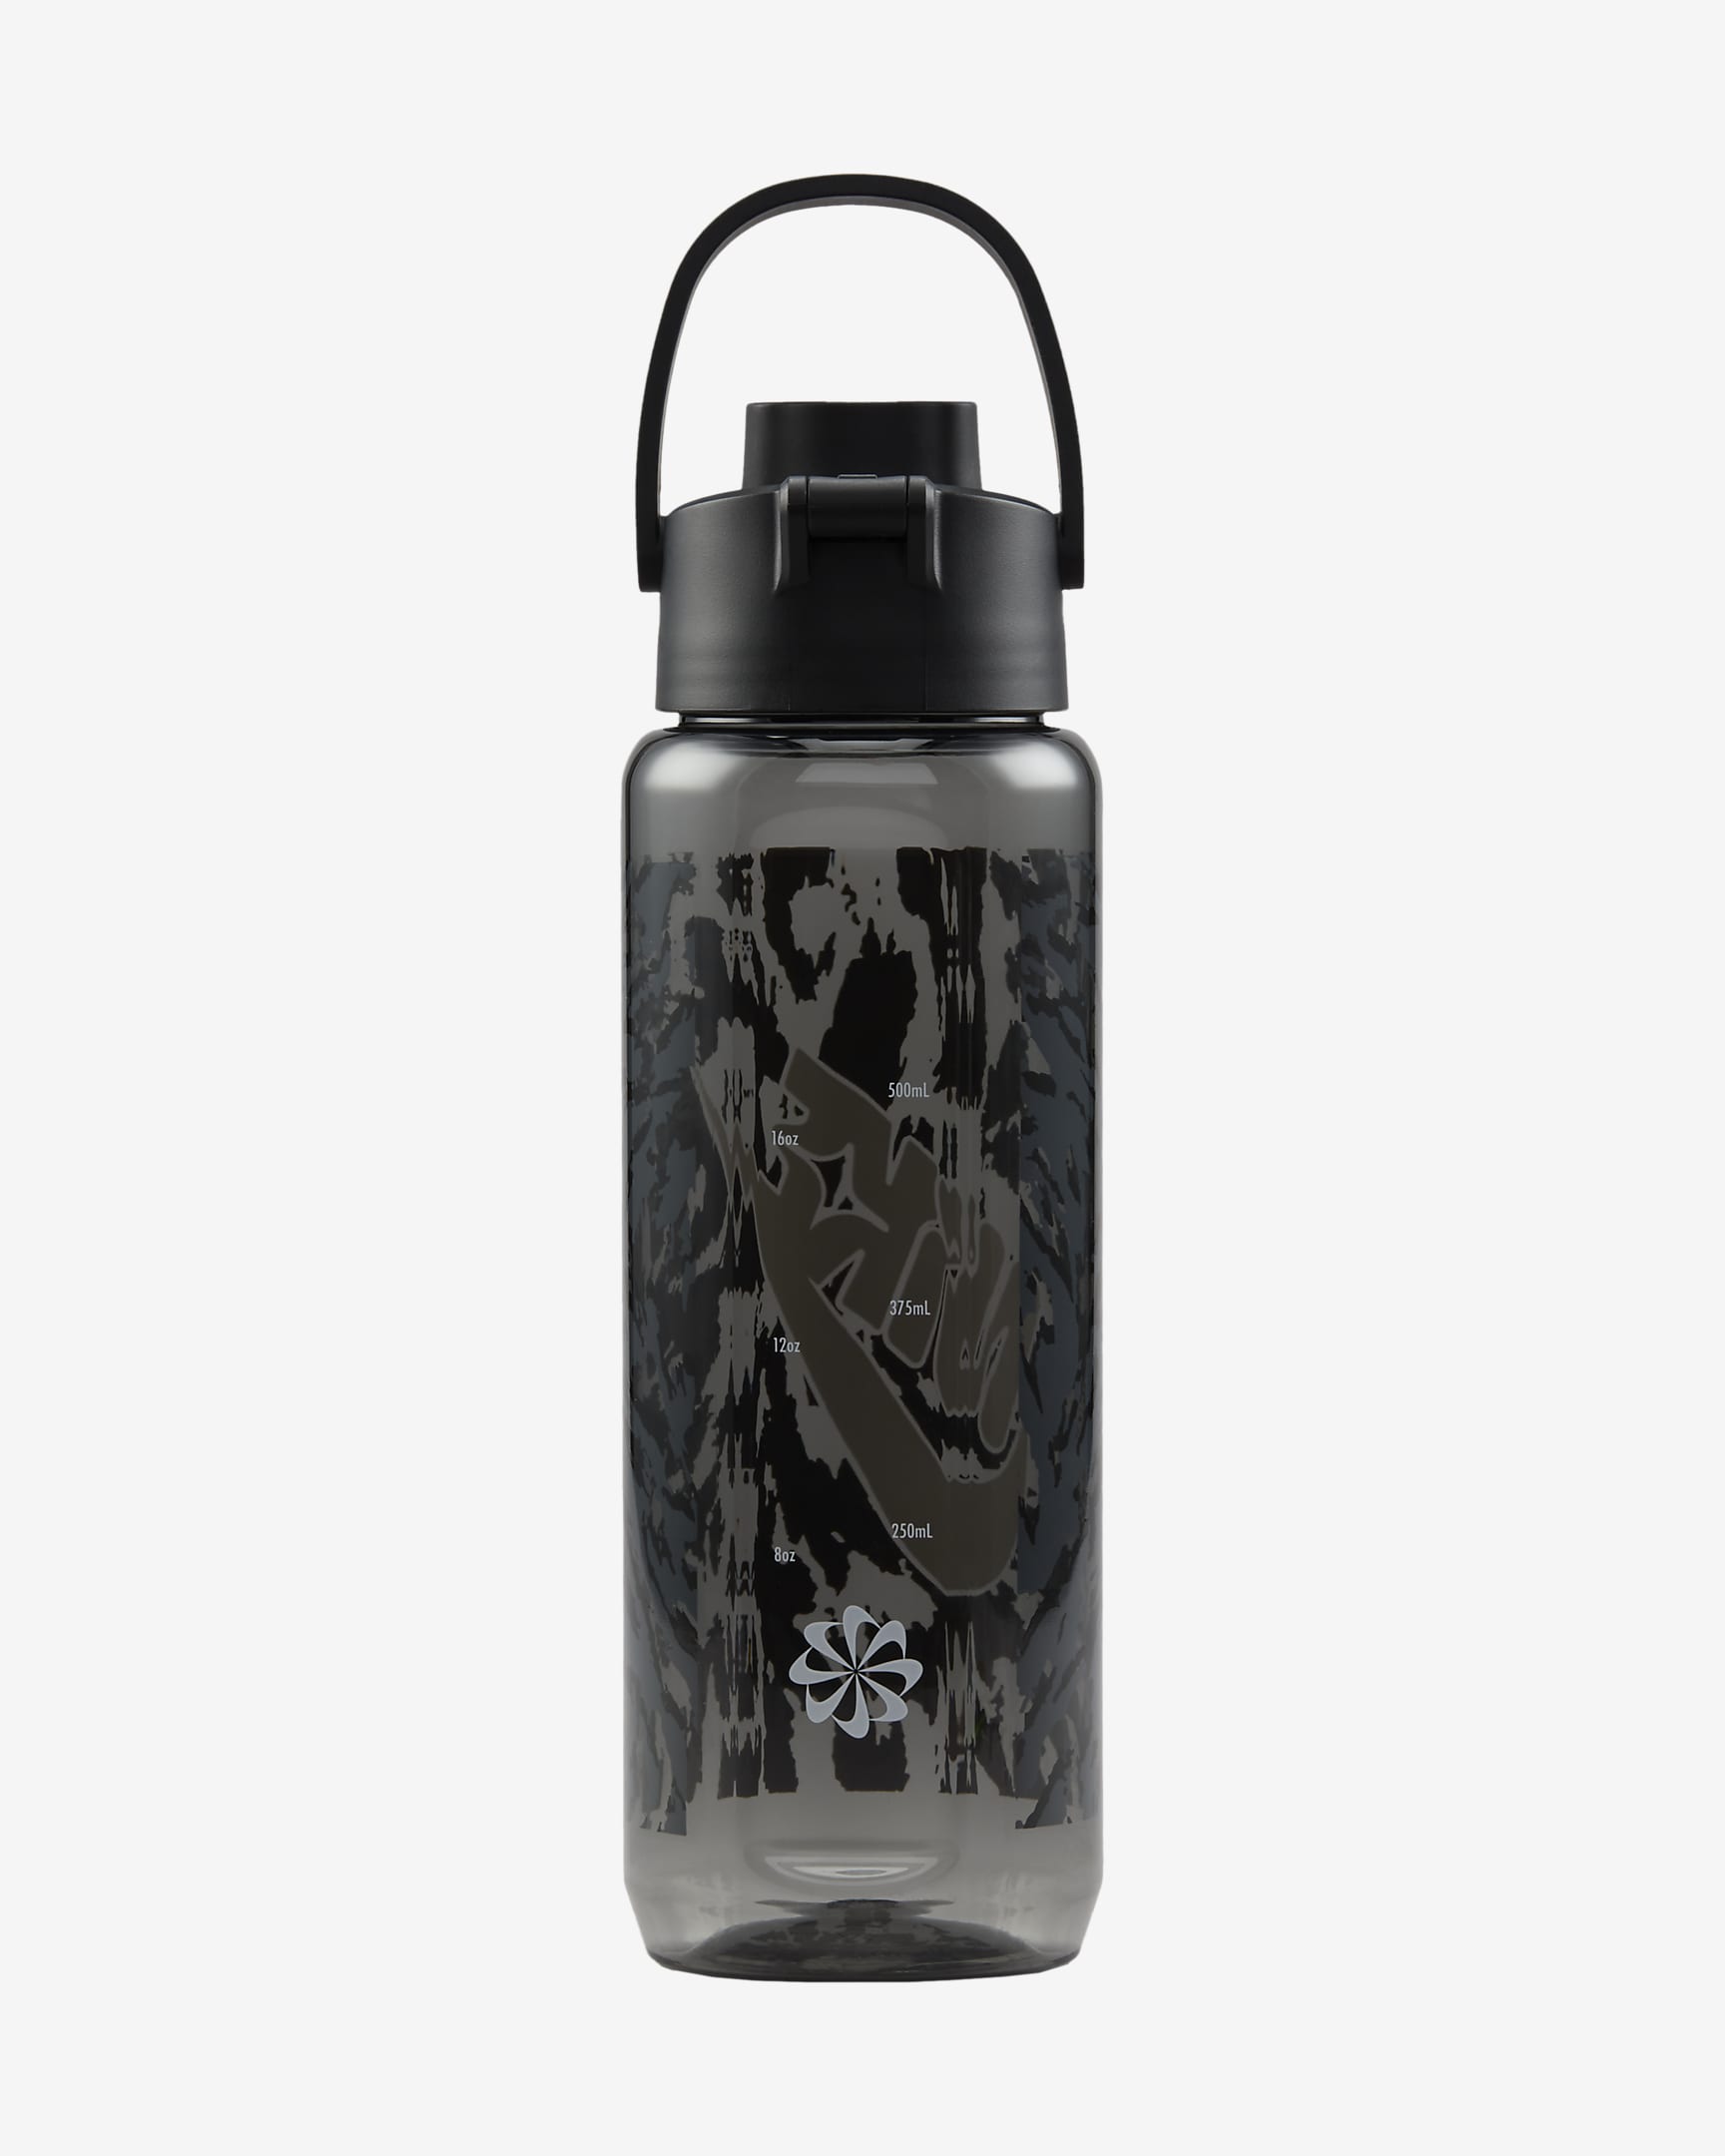 Nike Recharge Tritan Chug Bottle (710ml approx.) - Grey/Black/White